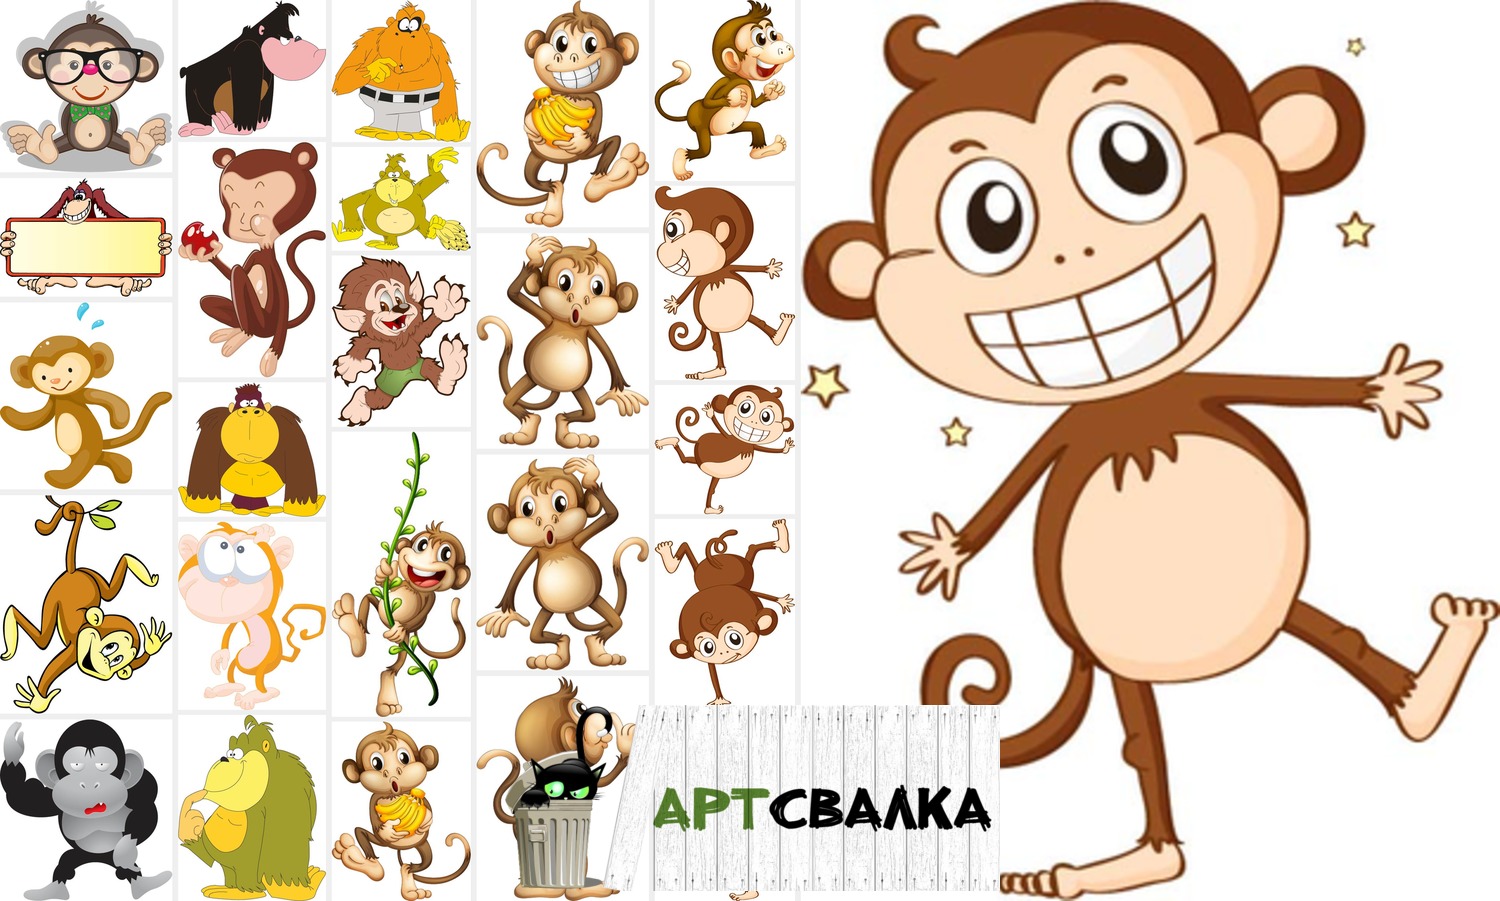 Смешные рисованные обезьянки | Funny cartoon monkeys